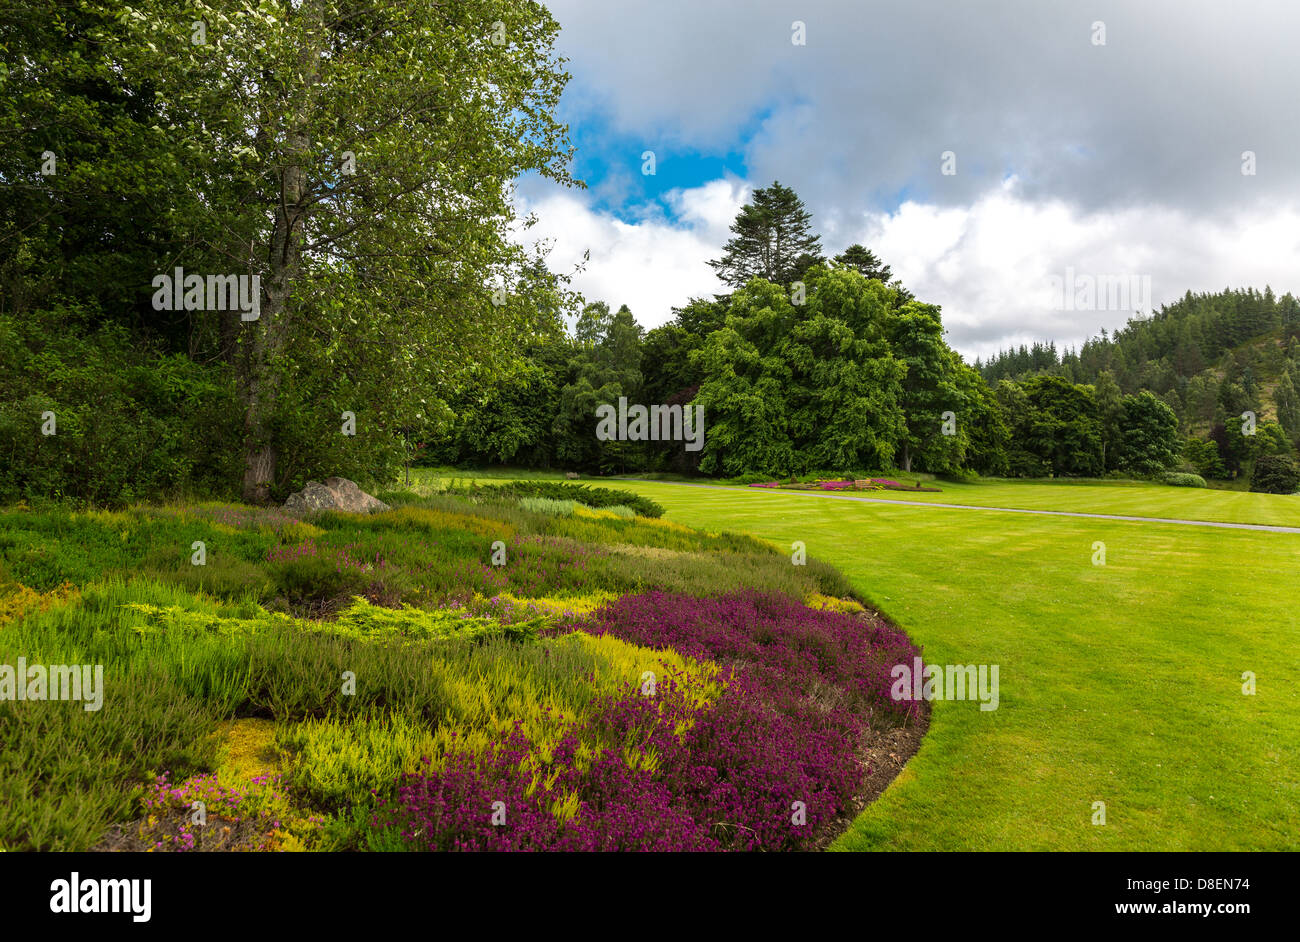 Gran Bretaña, Escocia, aberdeenshire, los jardines del castillo de Balmoral, residencia de verano de la familia real británica. Foto de stock